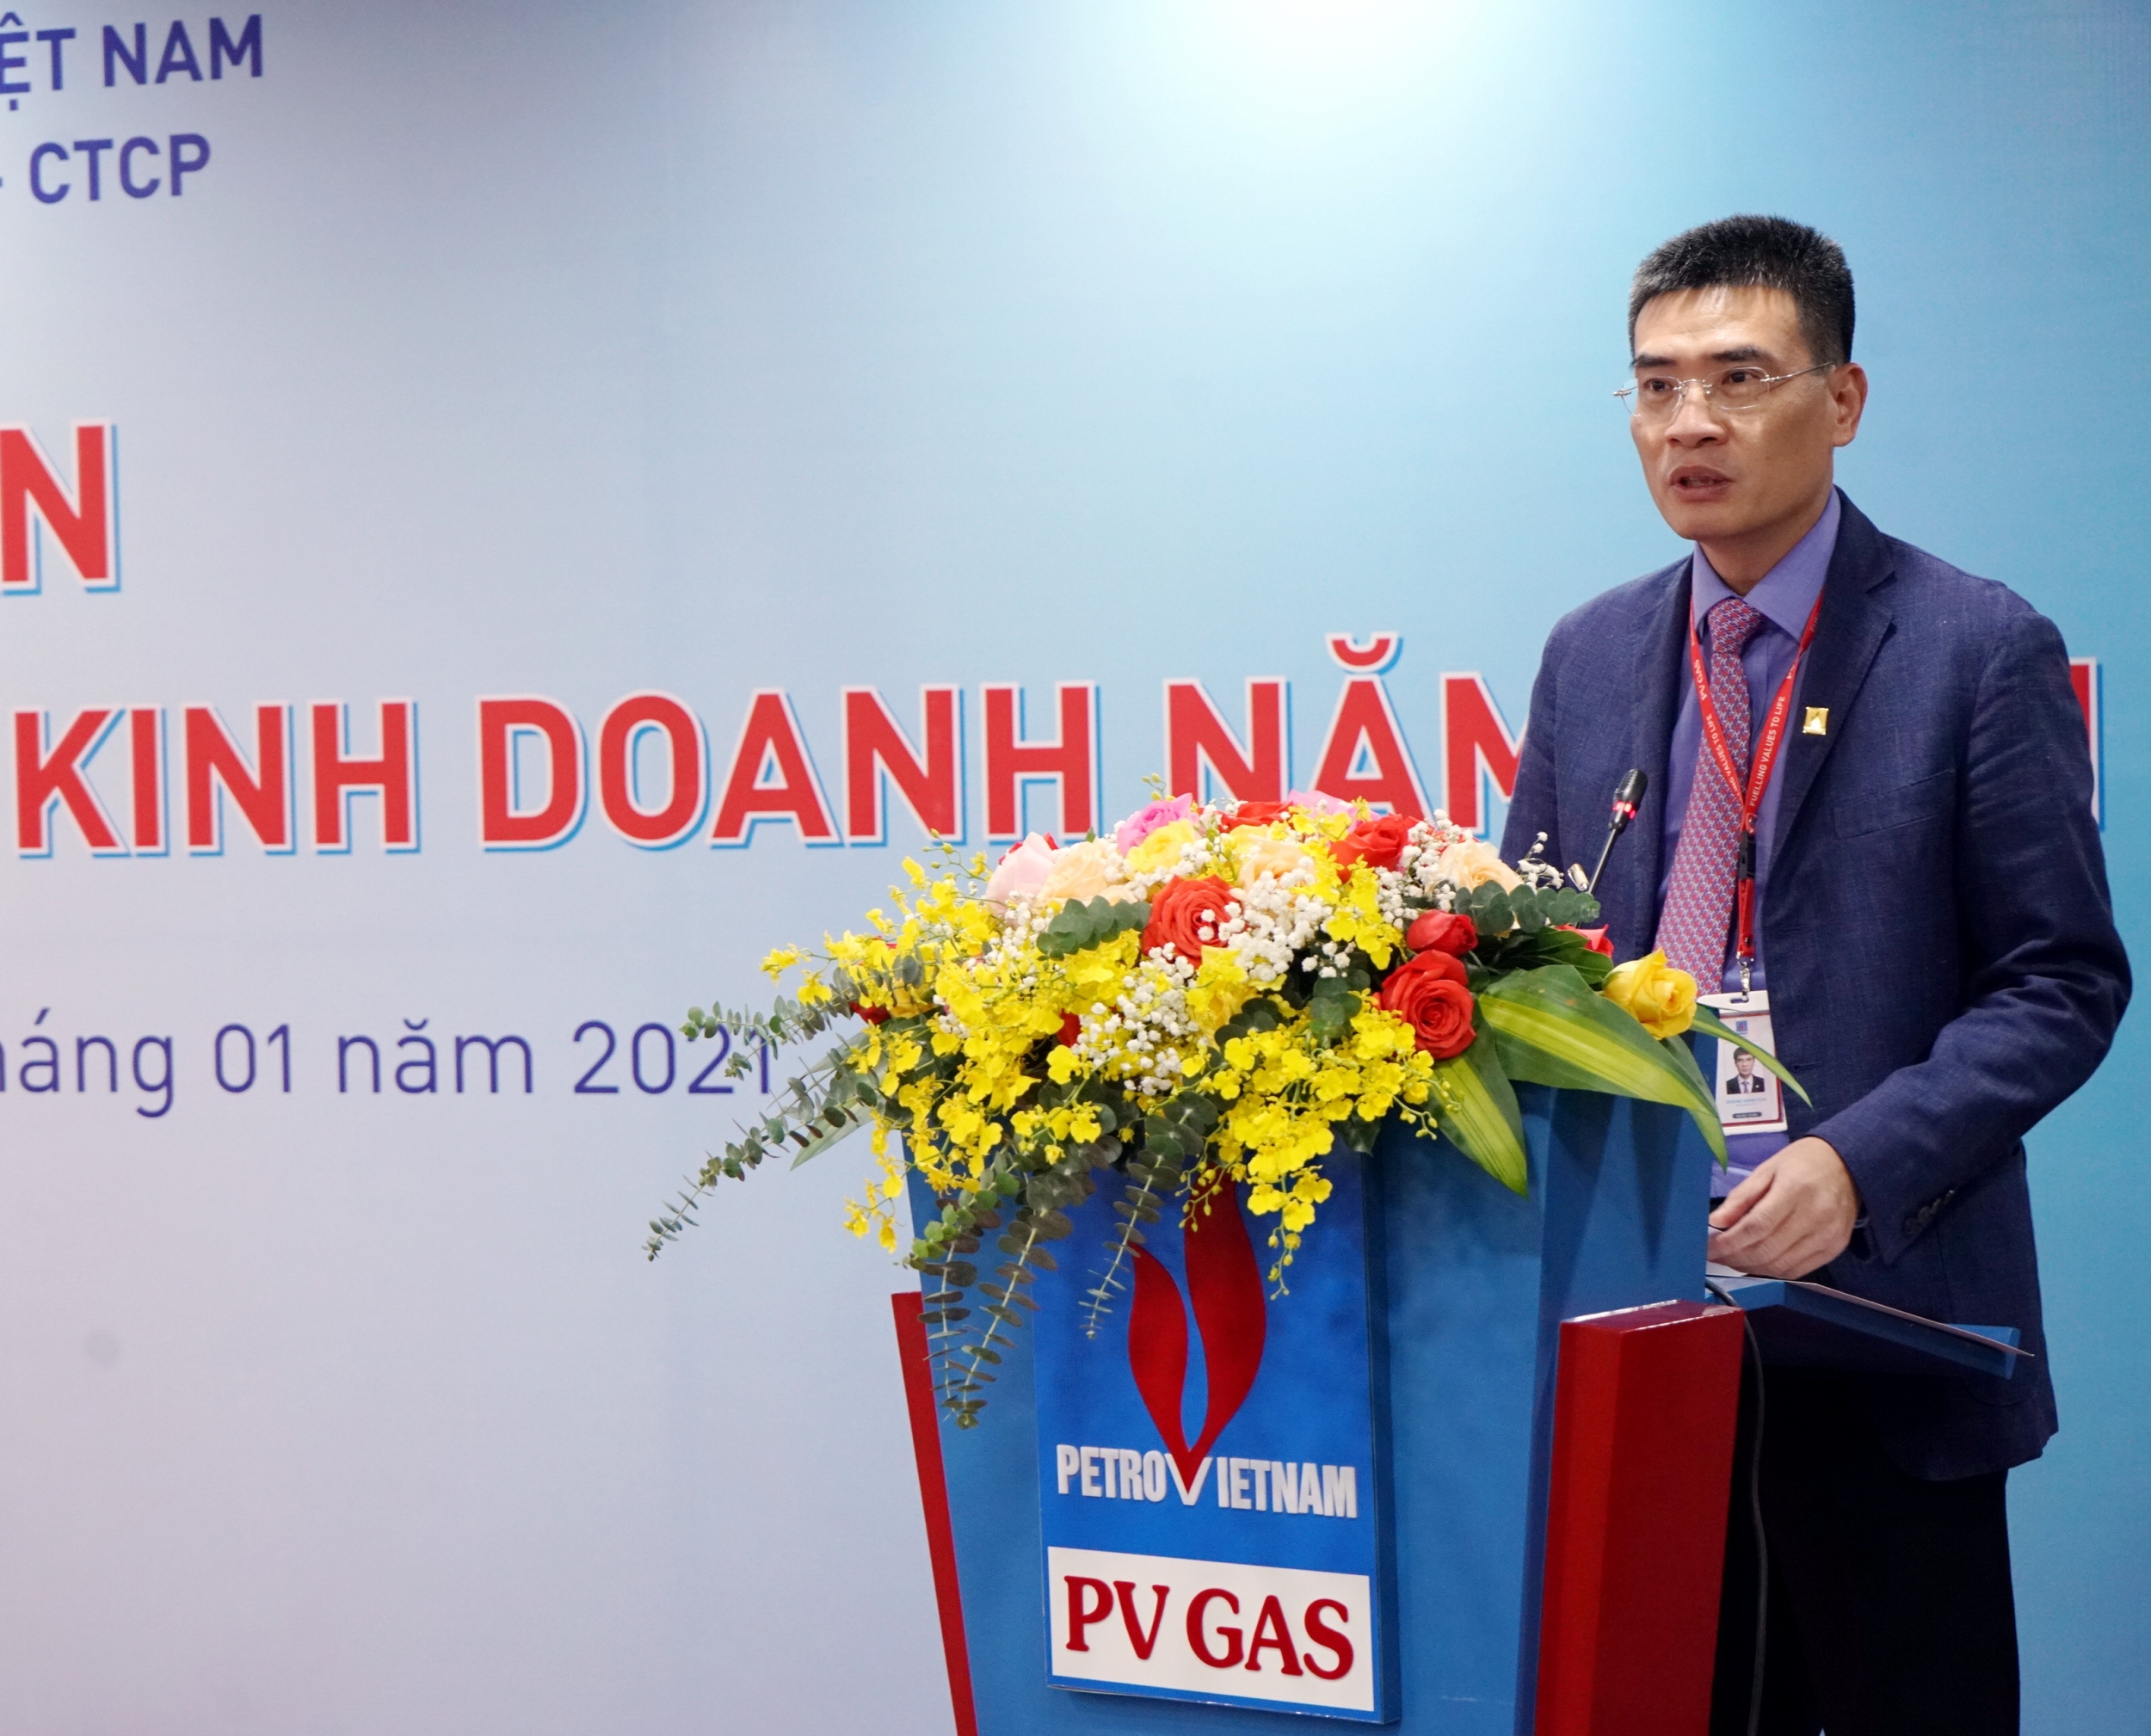  Bí thư Đảng ủy, Tổng giám đốc PV GAS Dương Mạnh Sơn phát động thi đua Lễ ra quân PV GAS 2021